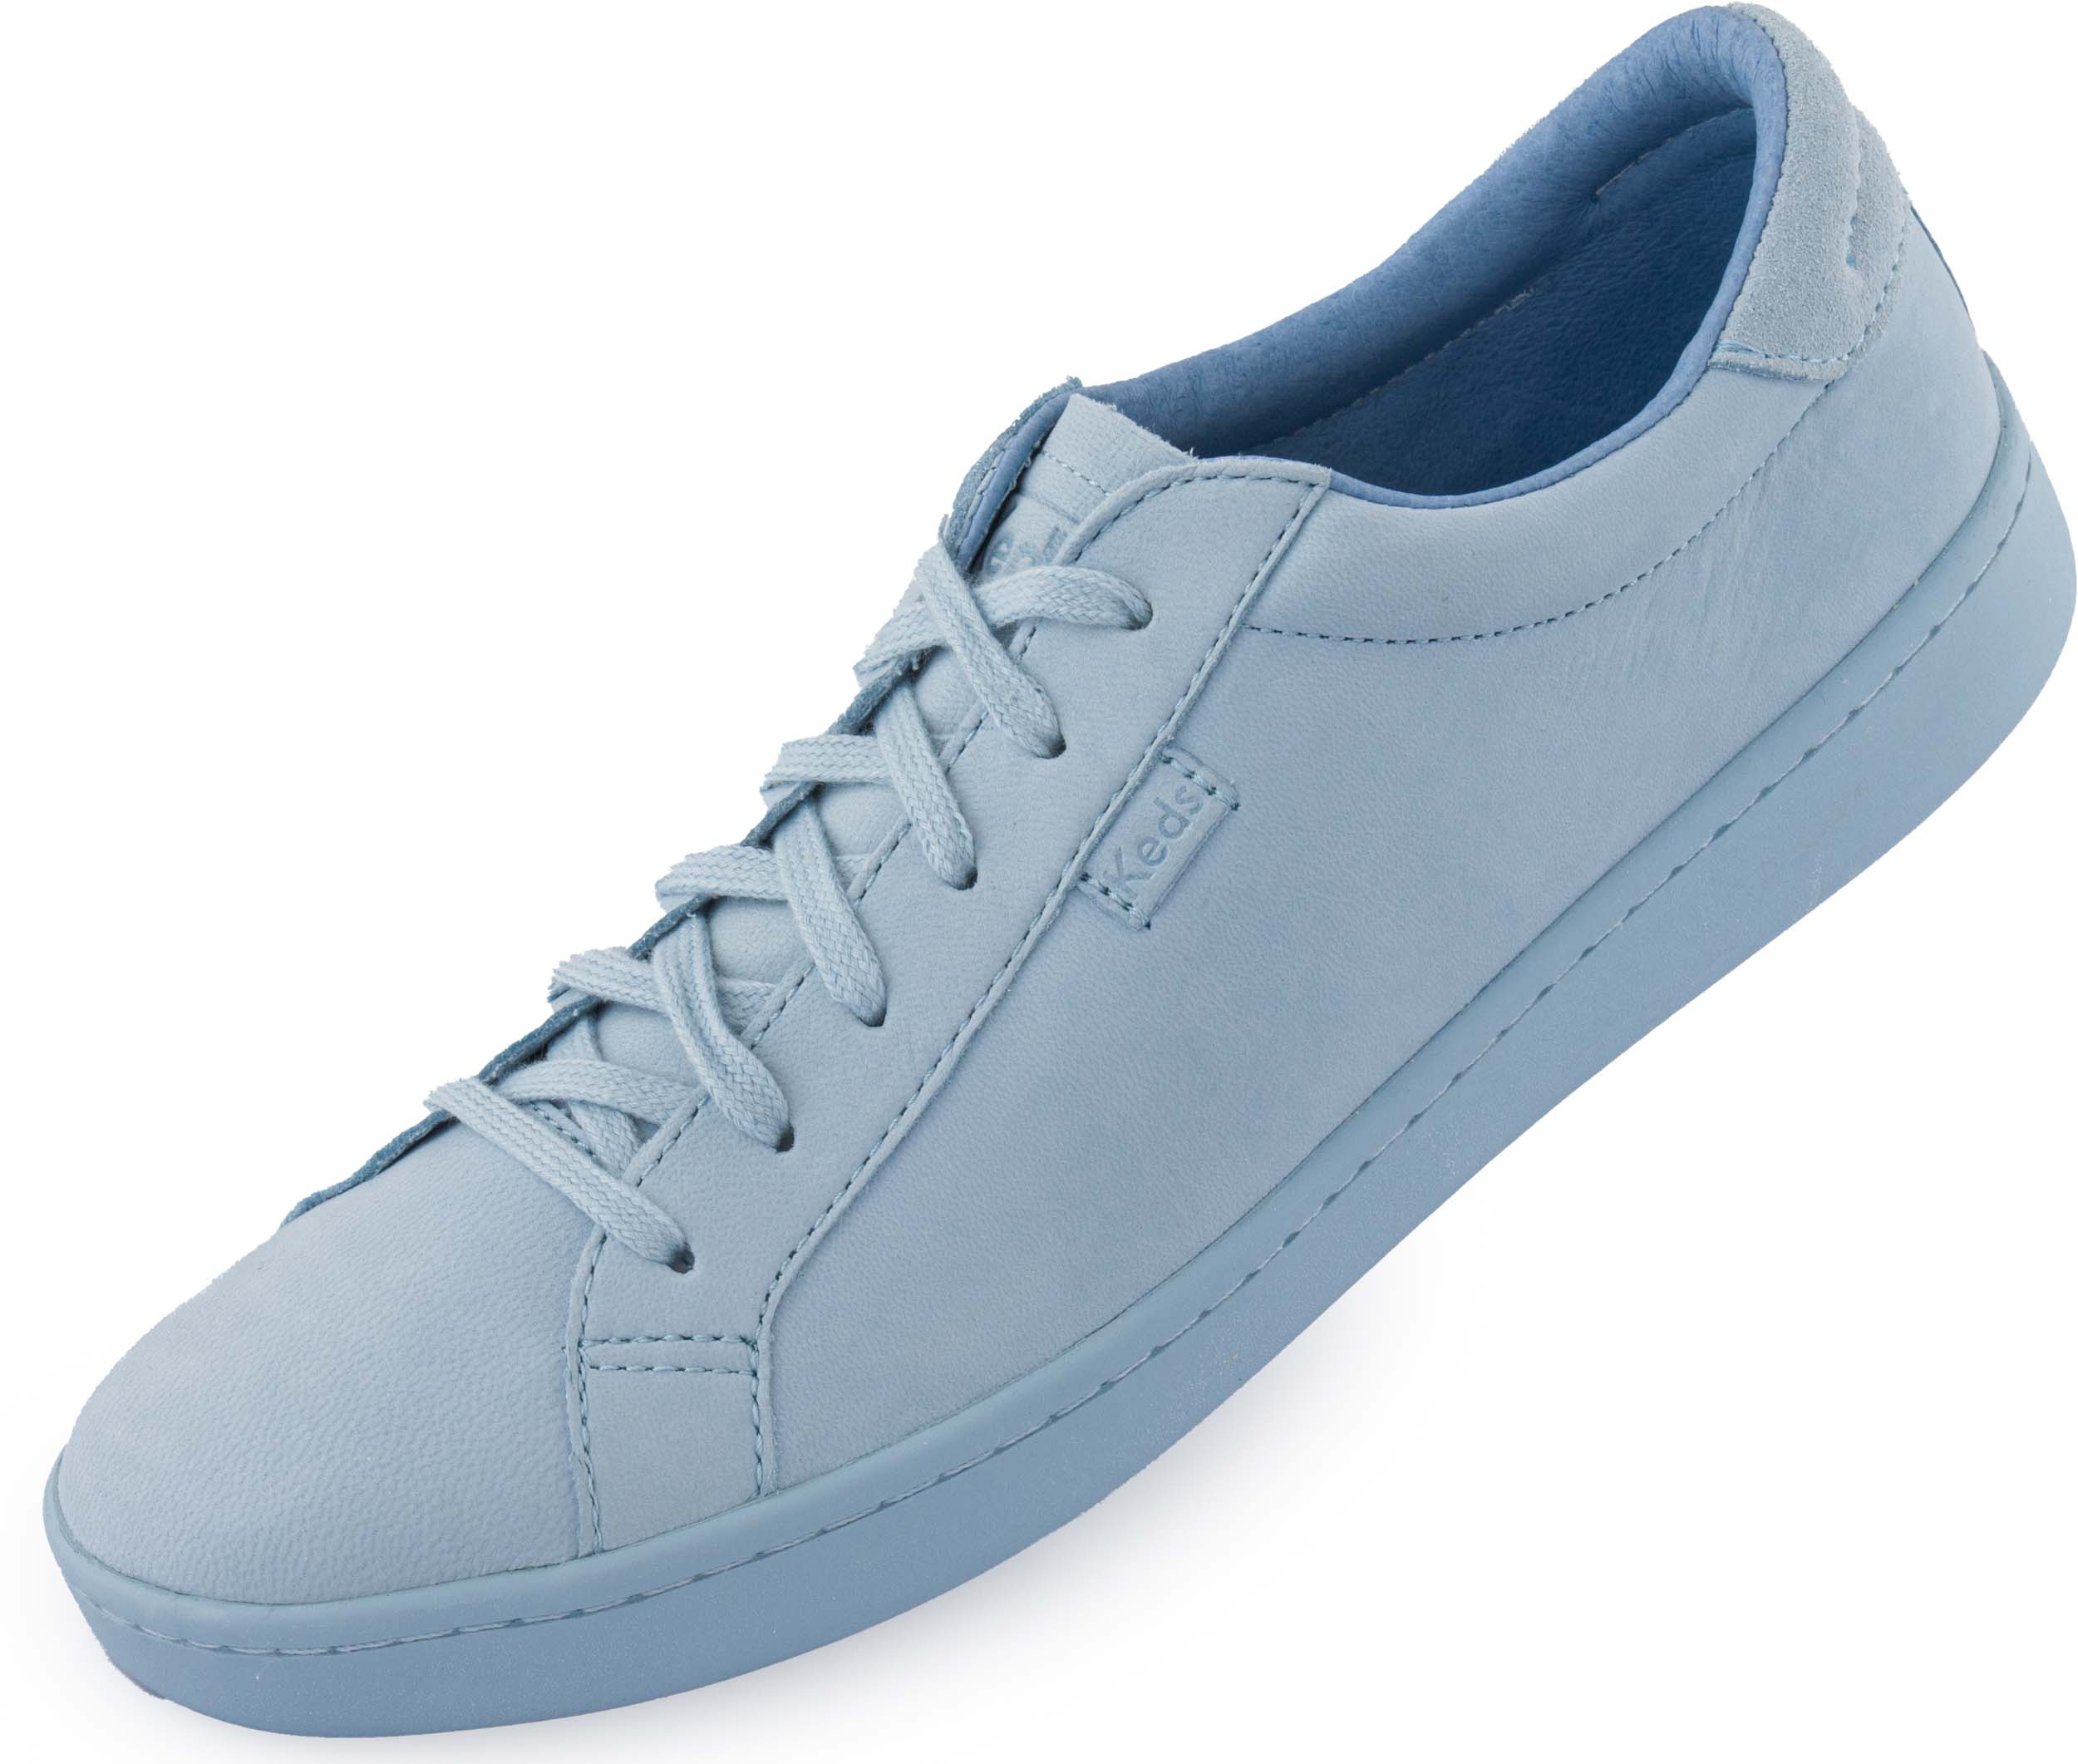 Dámské boty Keds Wms Ace Mono Leather Light Blue|41